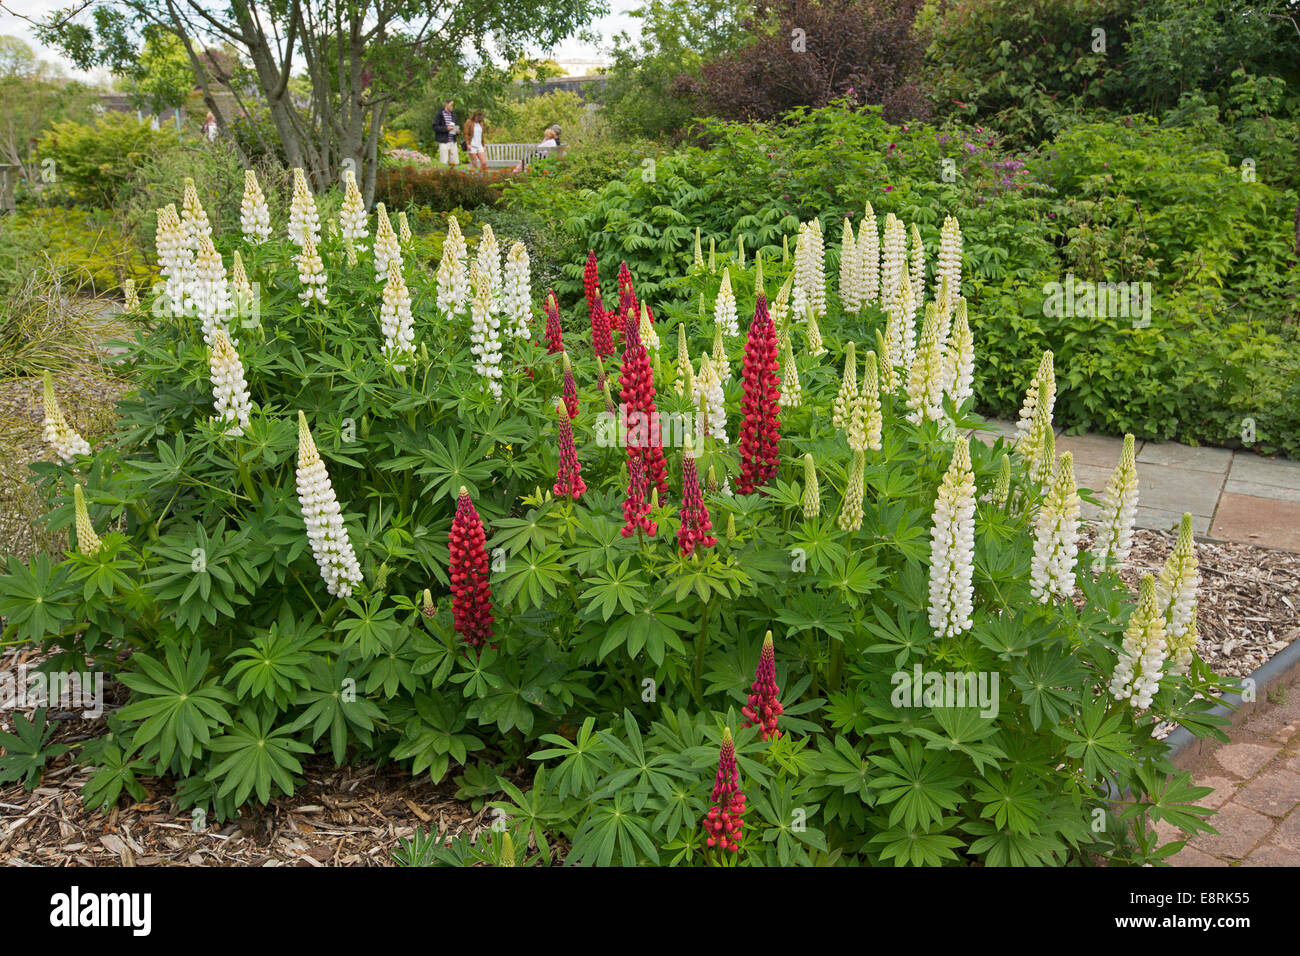 Masse des hohen Spitzen der leuchtend roten & weiße Lupine, Lupinus Polyphyllus Sorte & Smaragd Laub in krautigen Grenze des englischen Cottage-Garten Stockfoto